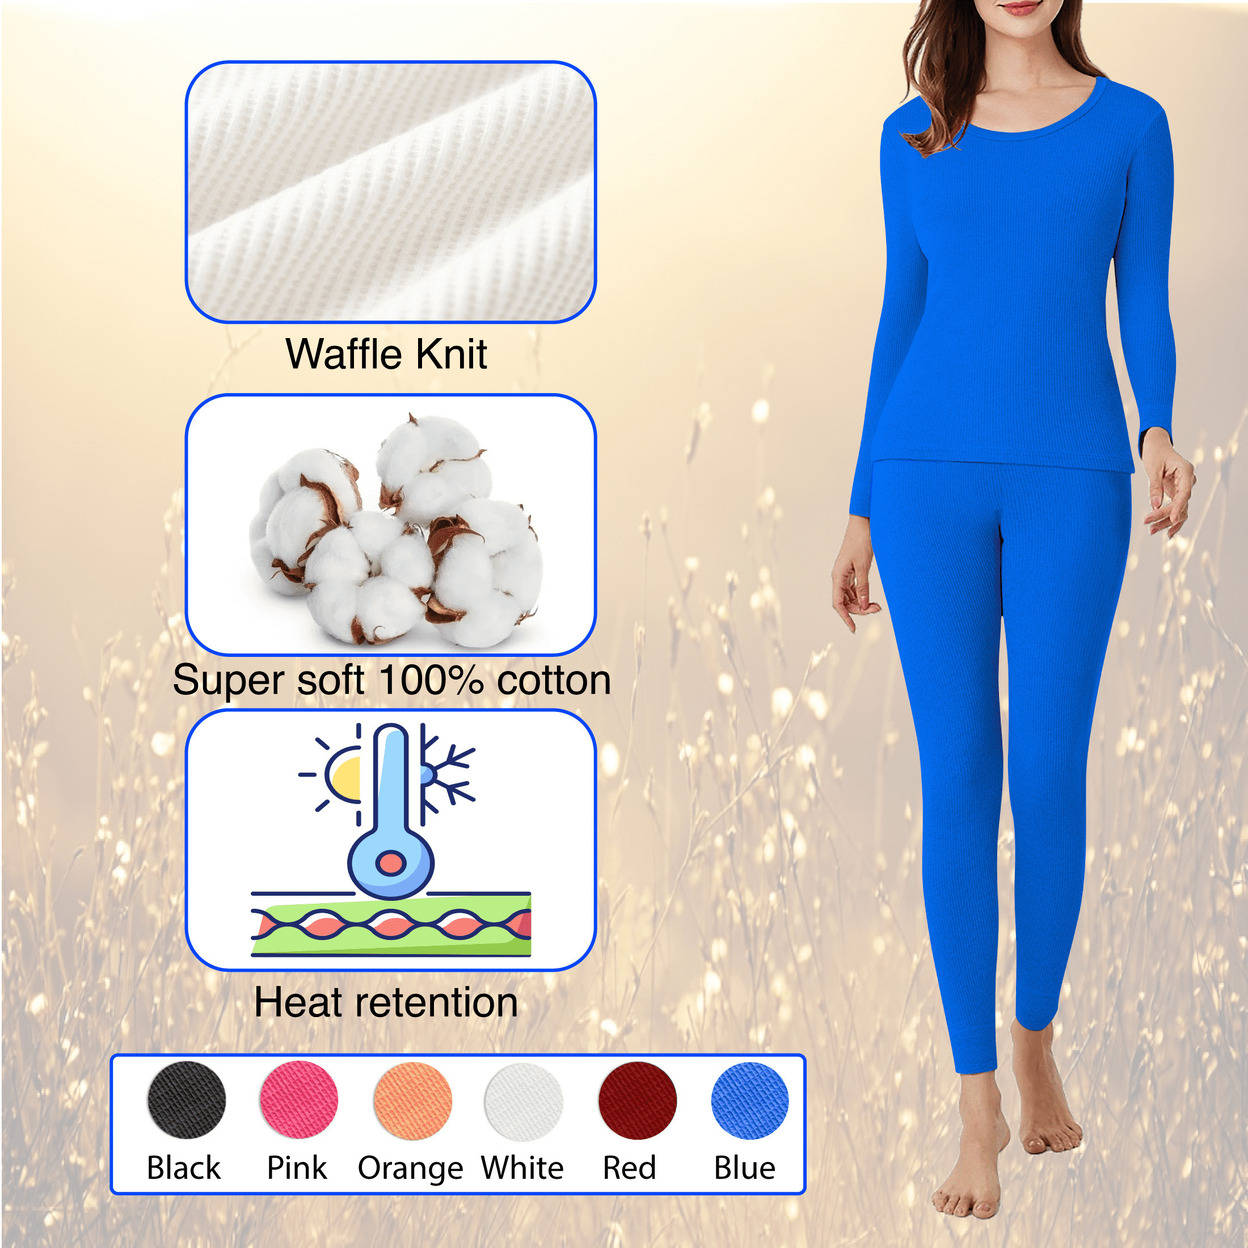 Multi-Set: Women's Winter Warm Ultra Soft Cotton Waffle Knit Thermal Sets - 2-set, Large